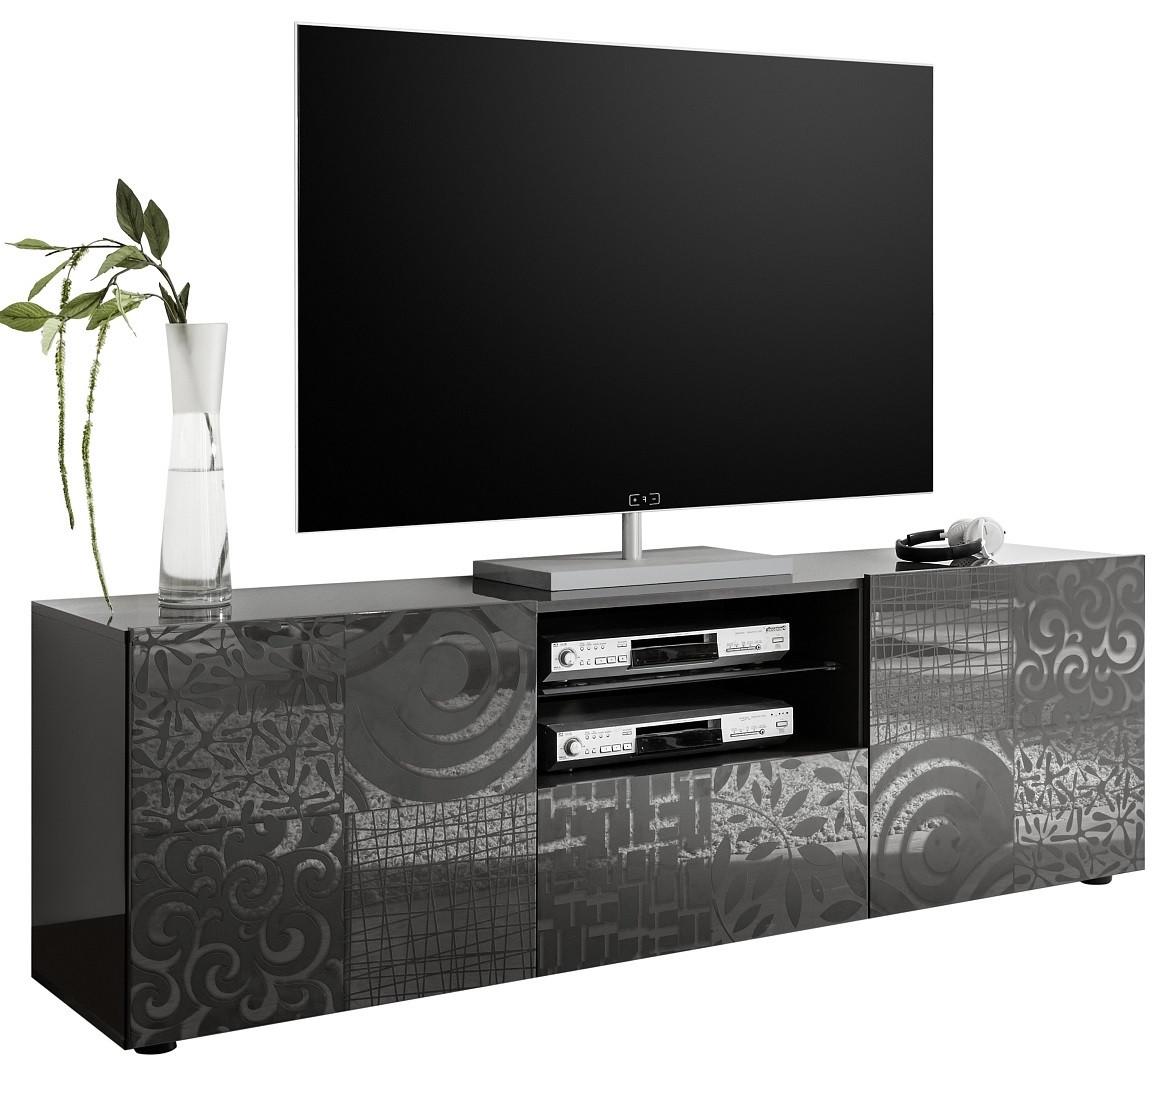 Tv-meubel Miro 181 cm breed in hoogglans antraciet